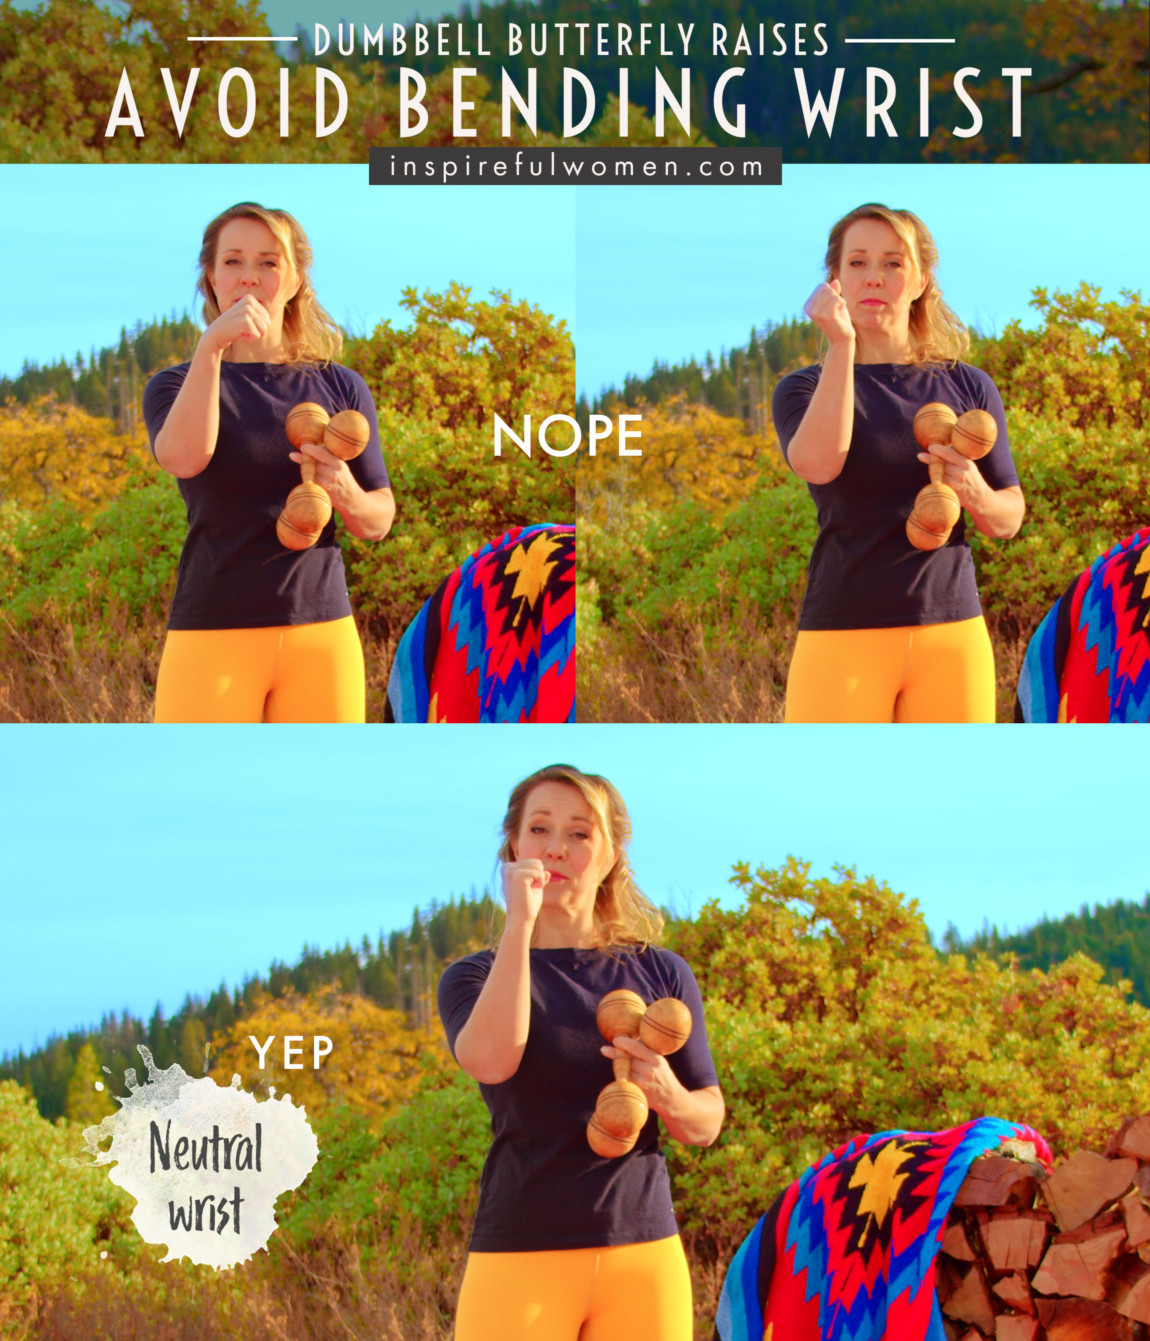 avoid-bending-wrist-dumbbell-butterfly-raises-deltoid-exercise-proper-form